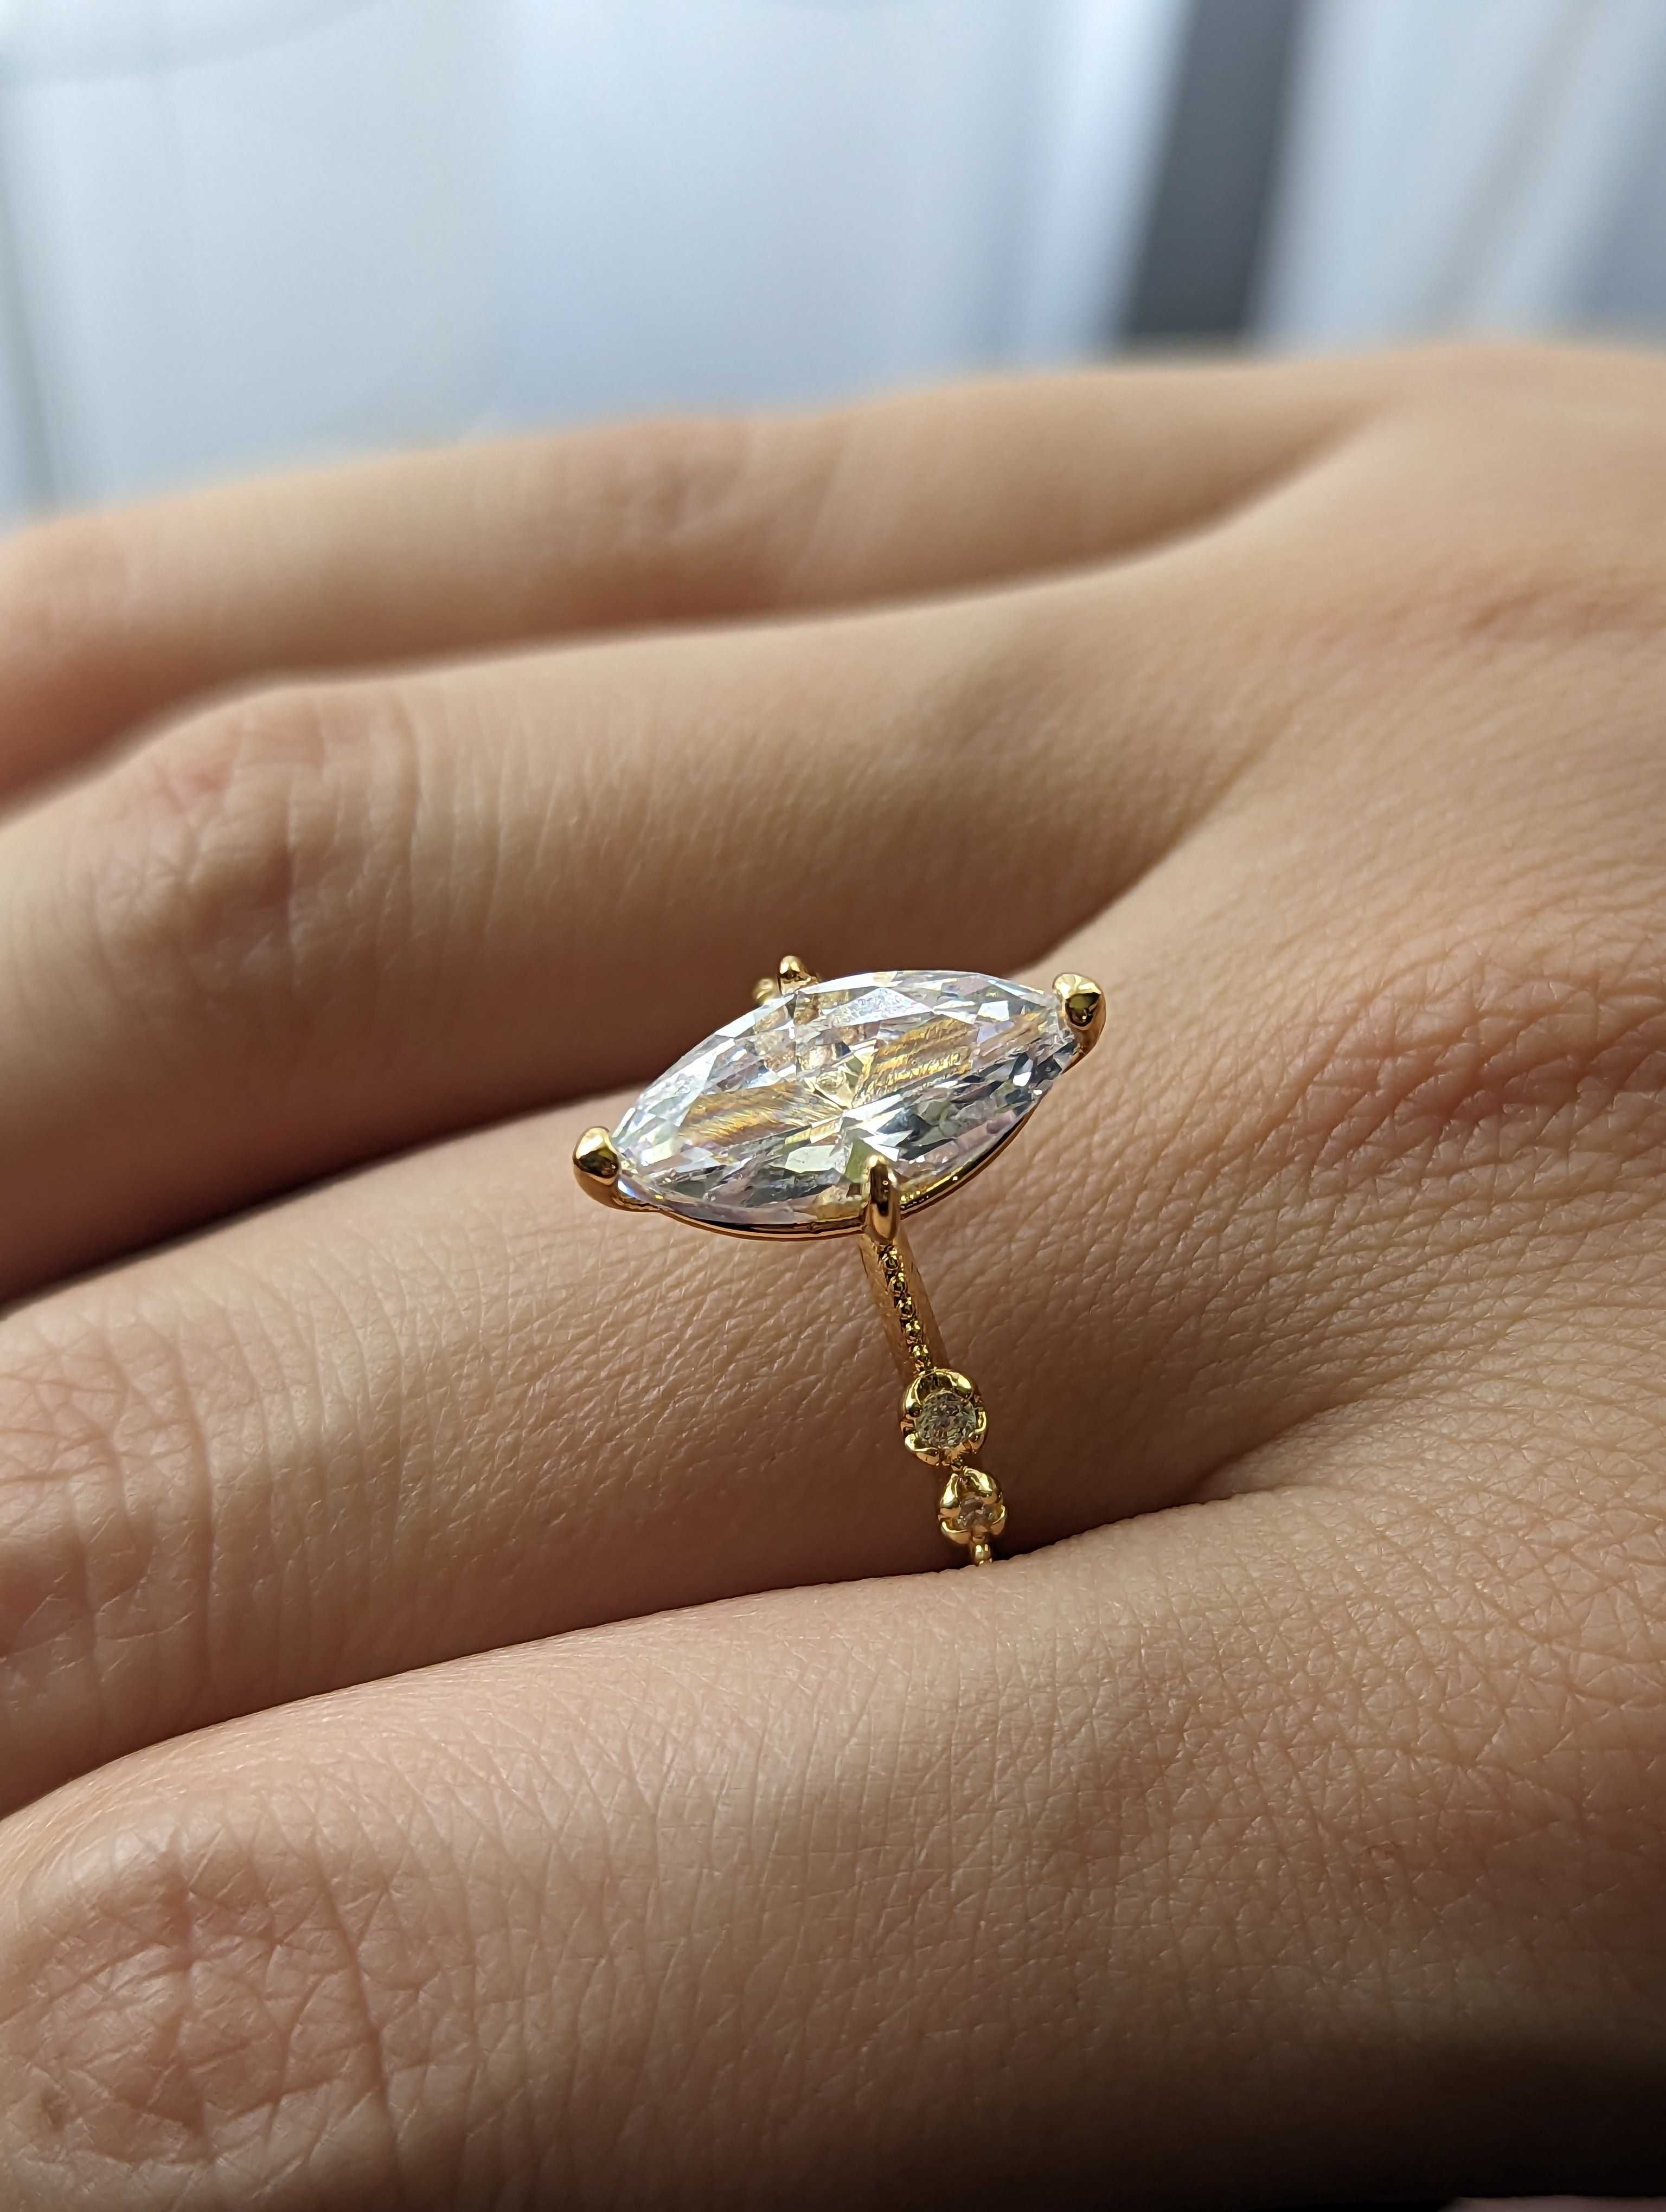 Златен дамски пръстен от медицинско злато (мед. стомана)и красив камък